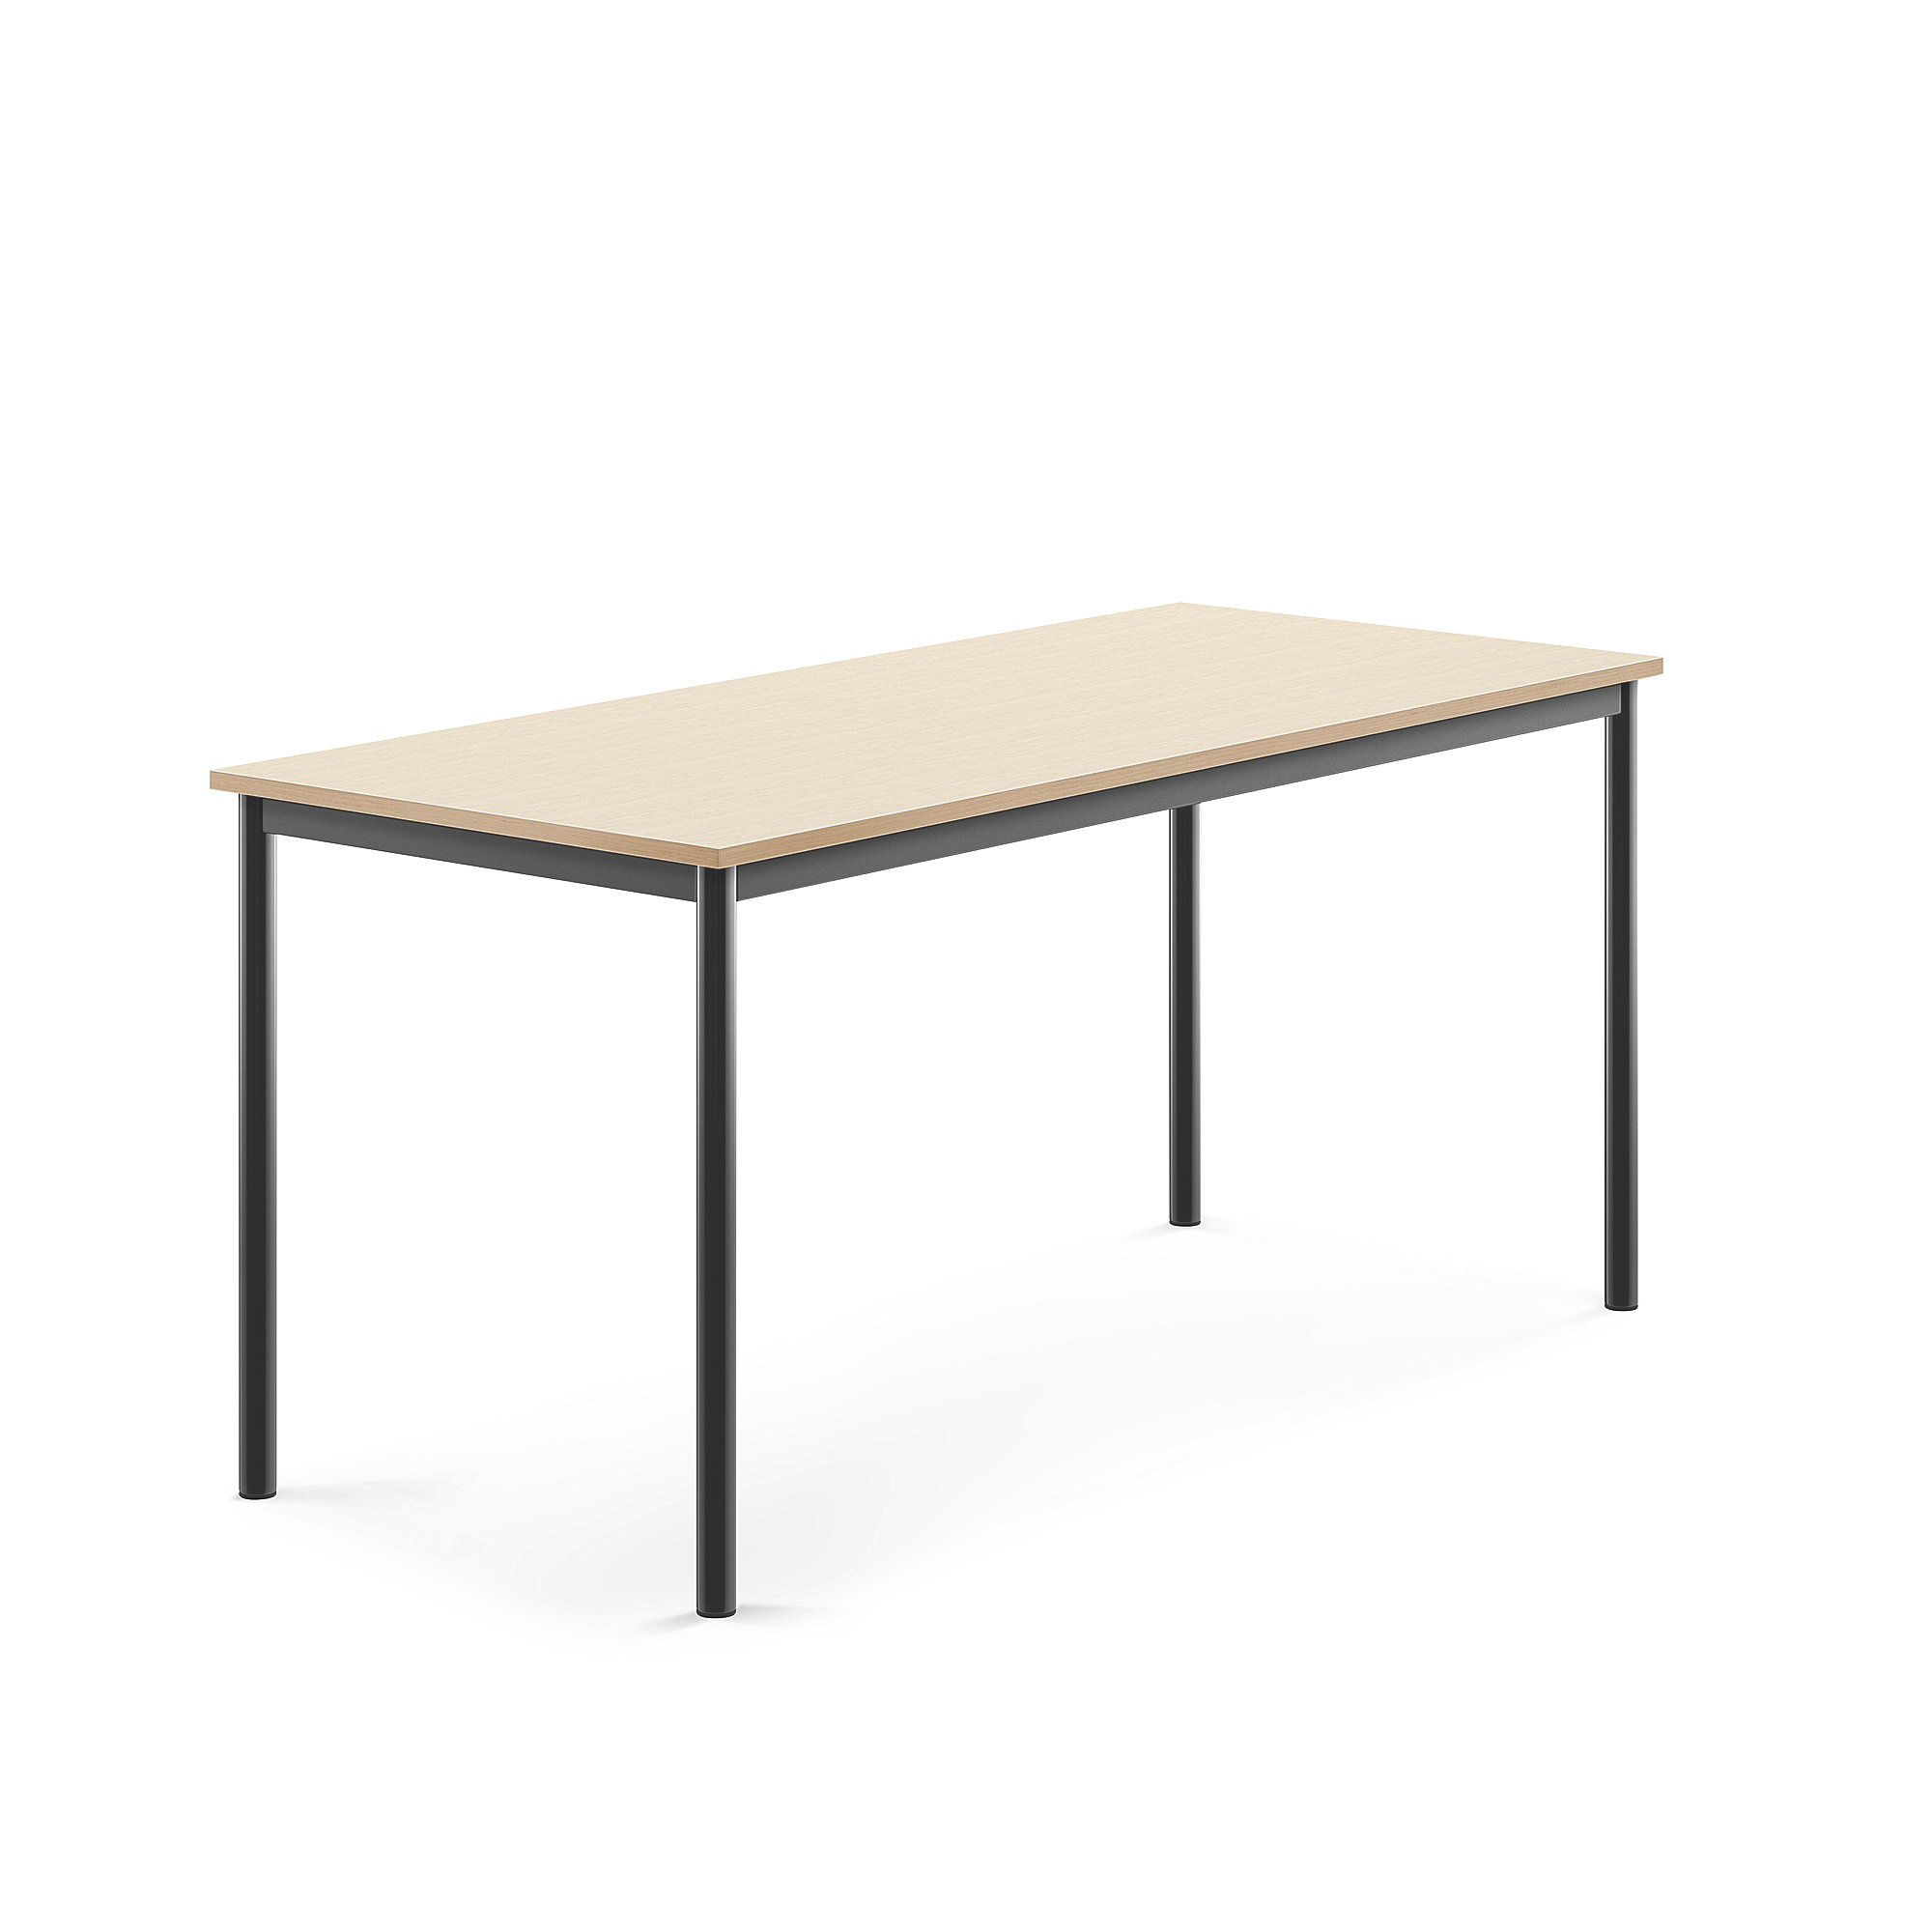 Stůl SONITUS, 1600x700x720 mm, antracitově šedé nohy, HPL deska tlumící hluk, bříza